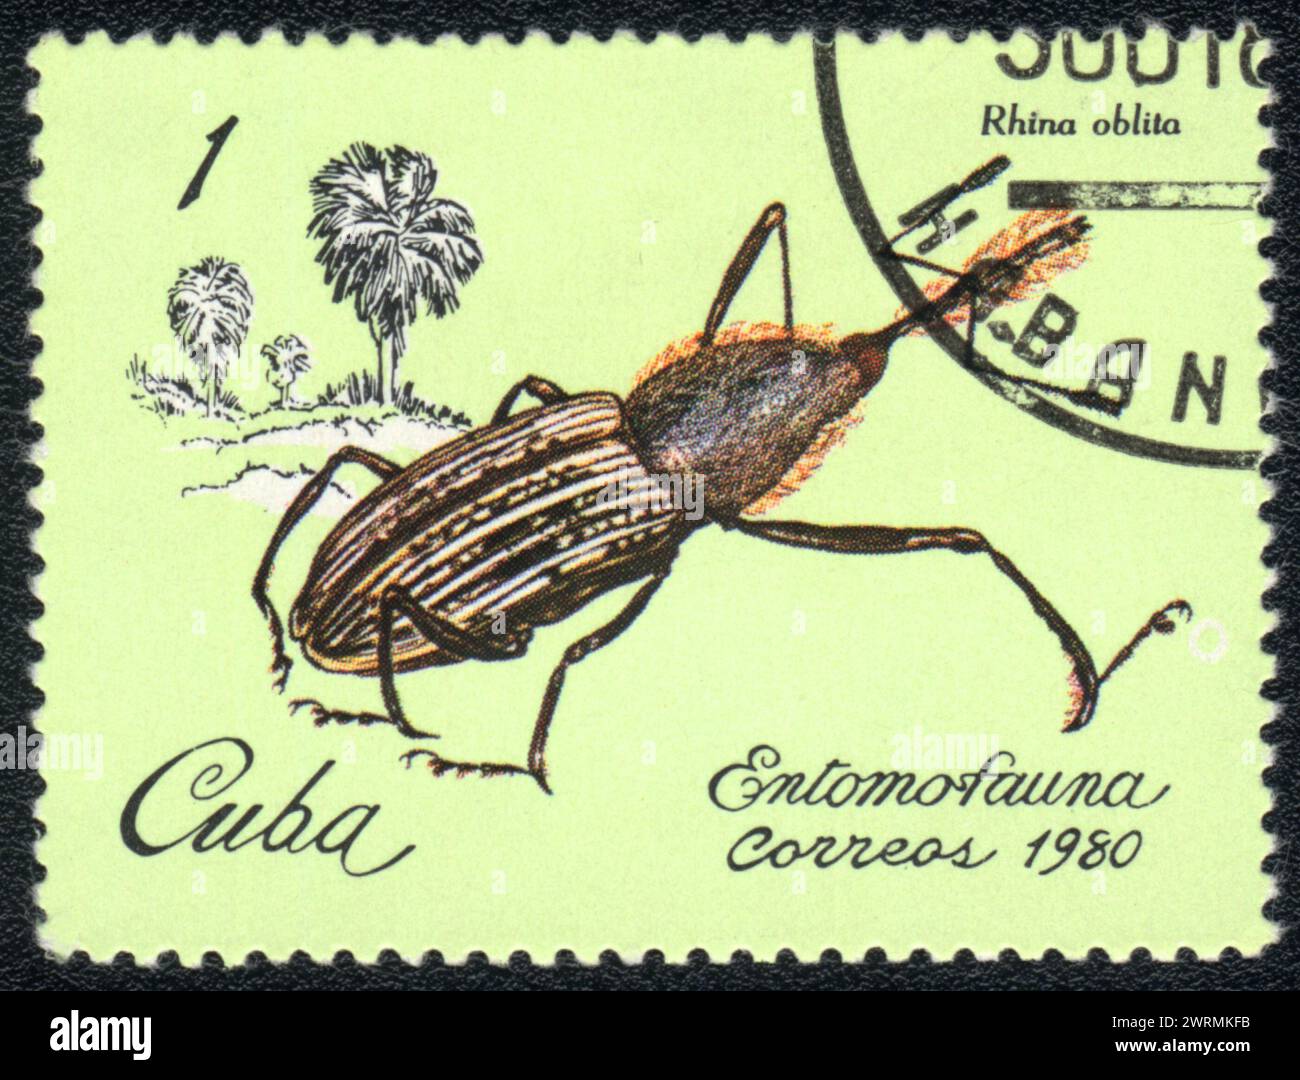 Un francobollo stampato a CUBA mostra l'immagine di uno scarabeo Rhina oblita, della serie - entomofauna, Cuba,1980 Foto Stock